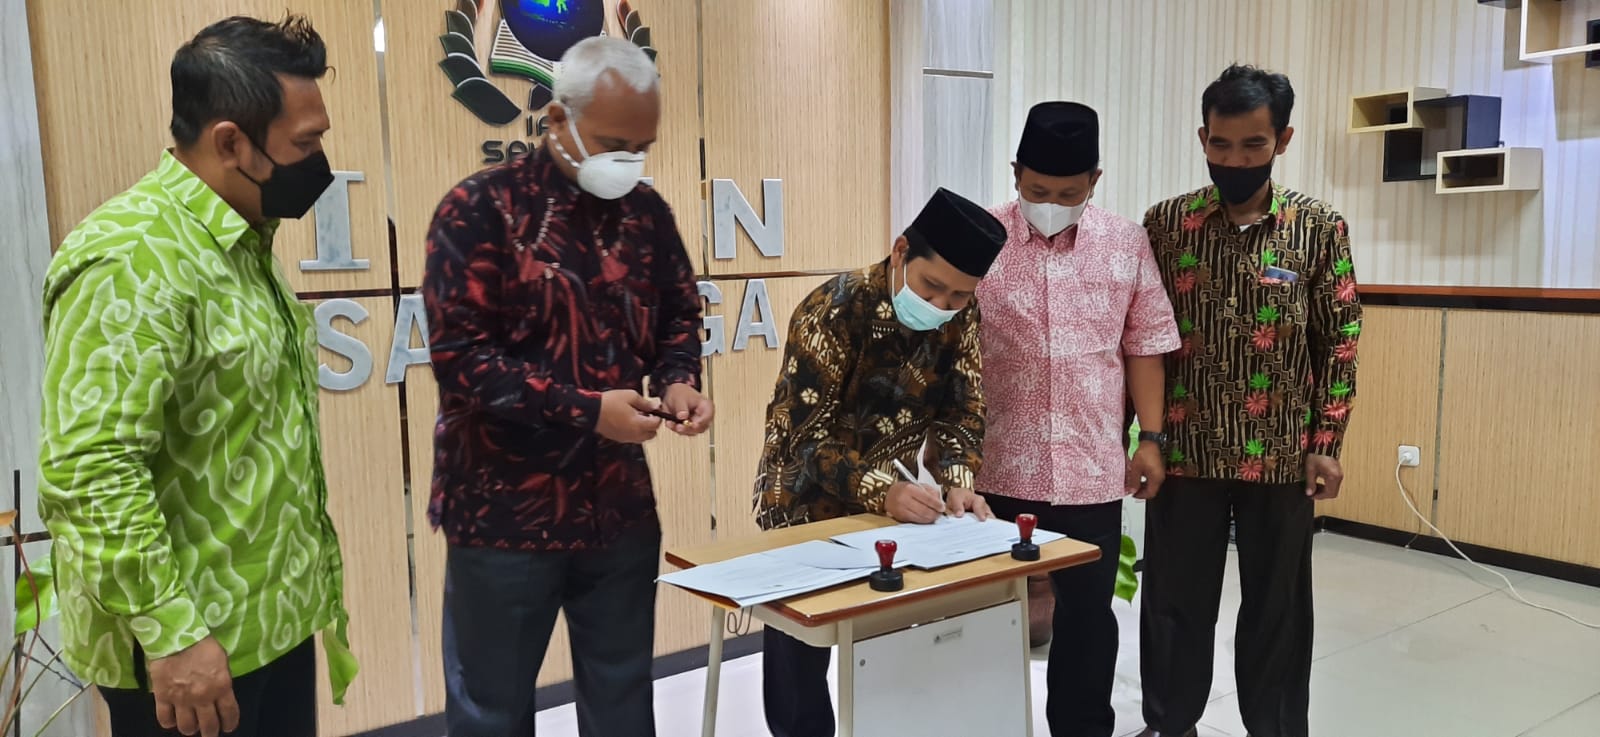 Penandatanganan Kerjasama Antara Jurnal Penamas Dengan Indonesian Journal of Islam and Muslim Societies (IJIMS) IAIN Salatiga